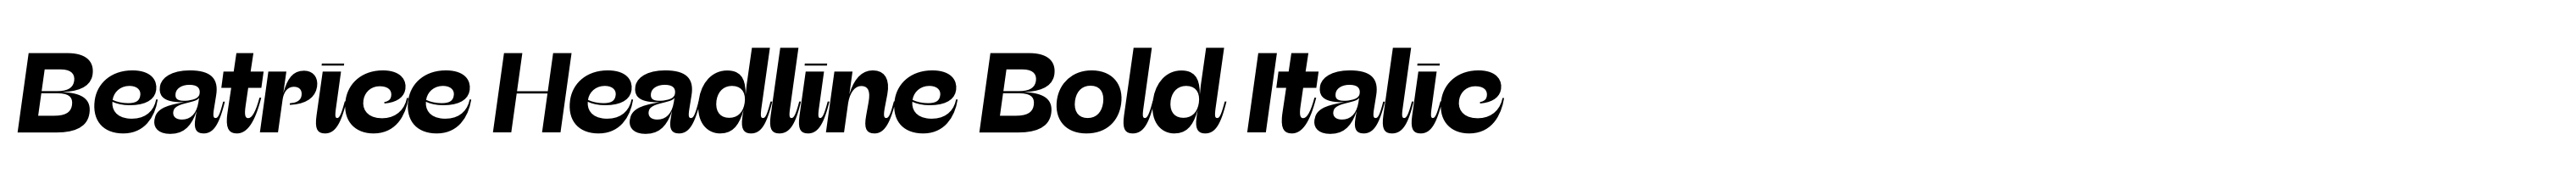 Beatrice Headline Bold Italic